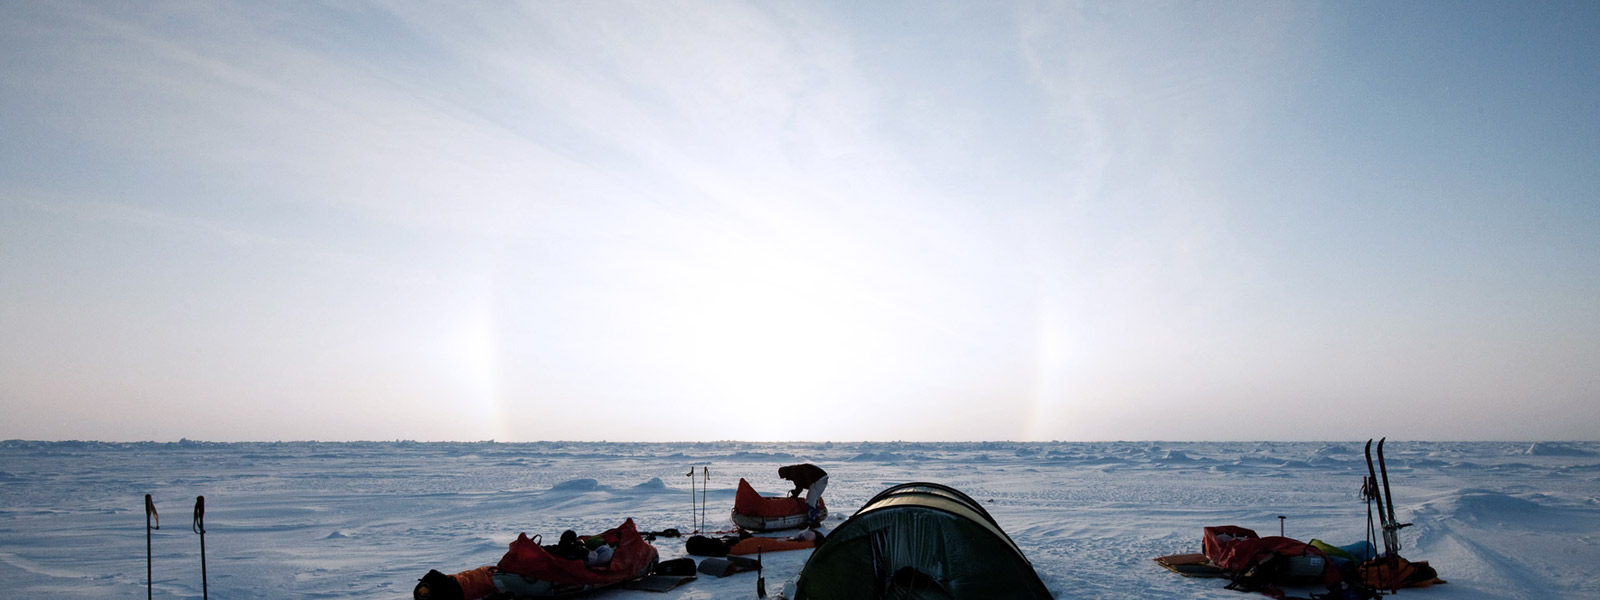 arctic landscape with arctic researchers